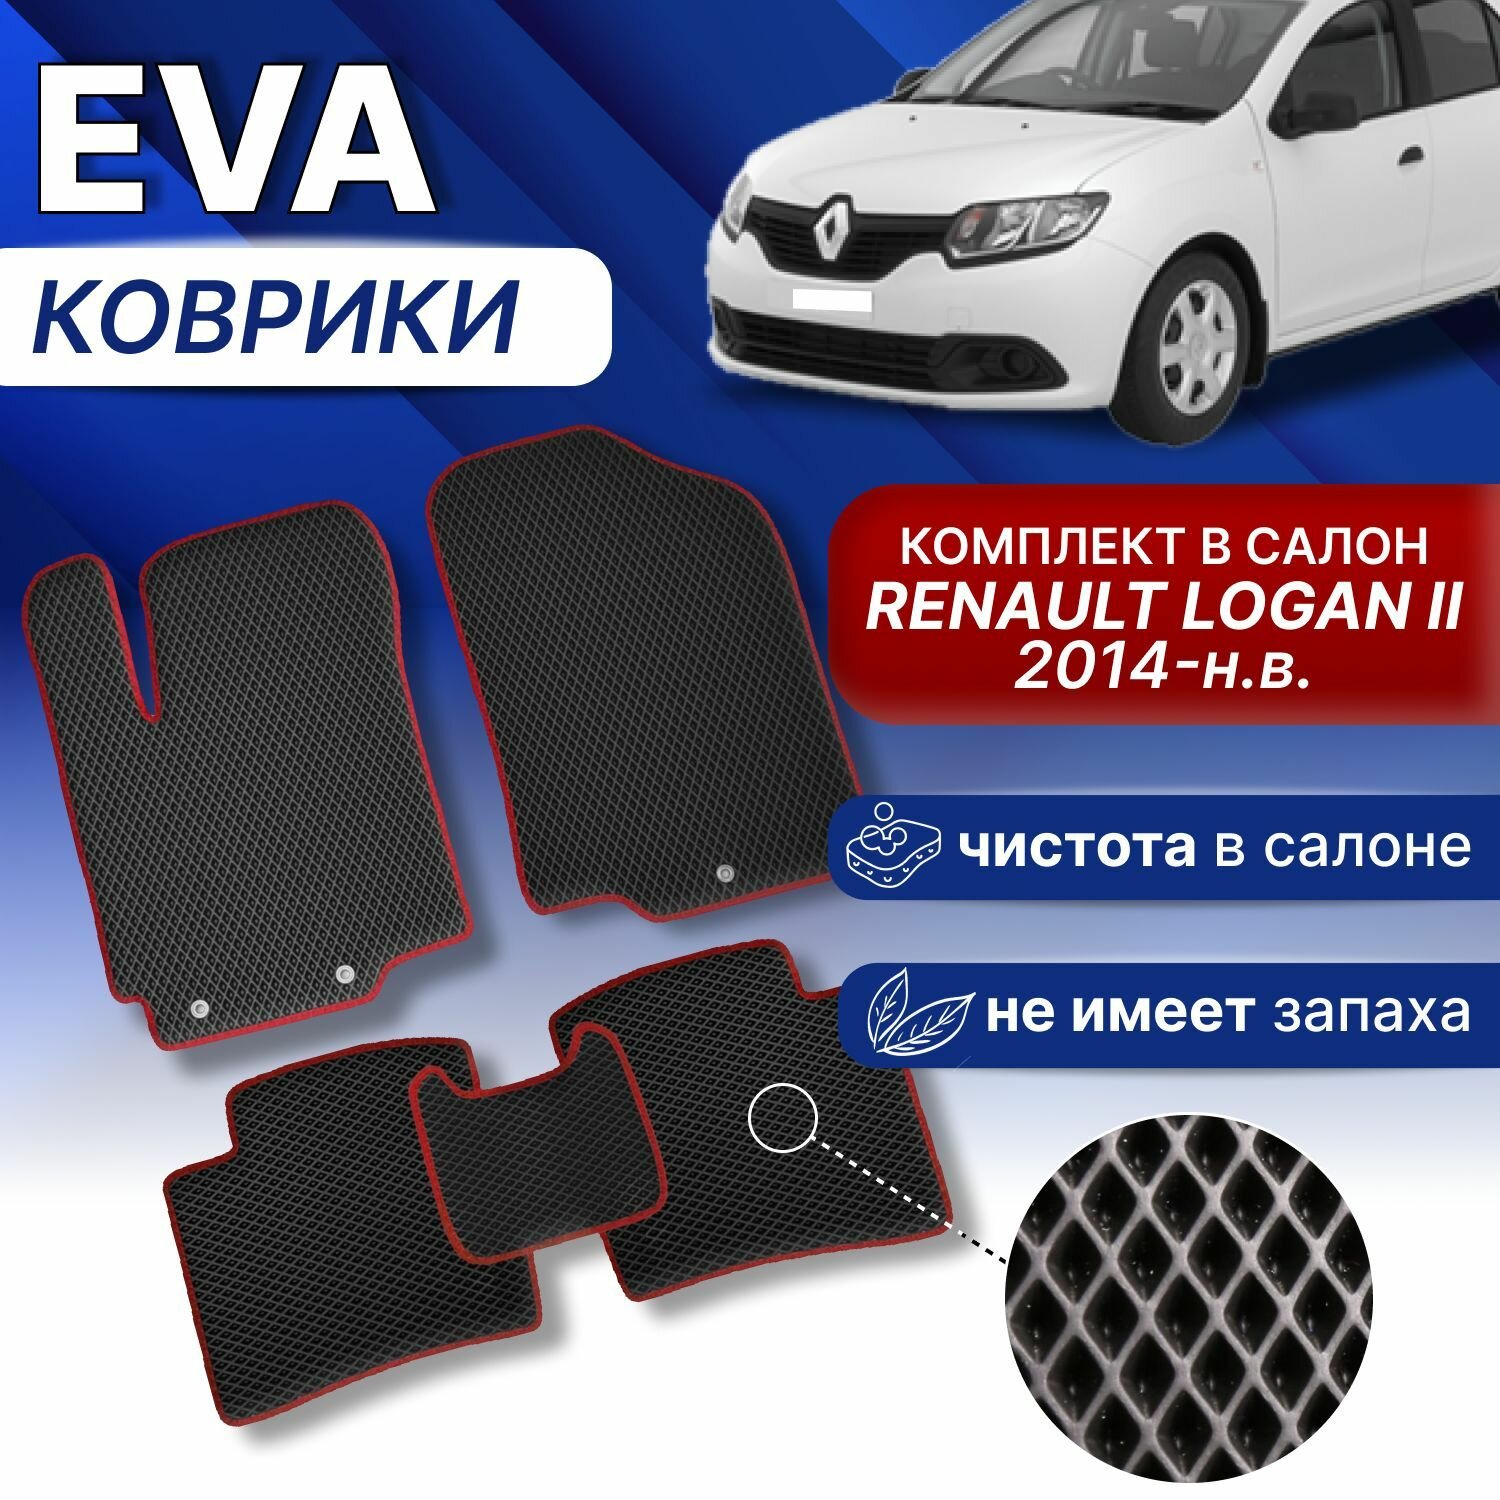 EVA коврики в Renault Logan 2 2014-н. в. (черный/красный кант) ЭВА ЕВА рено логан